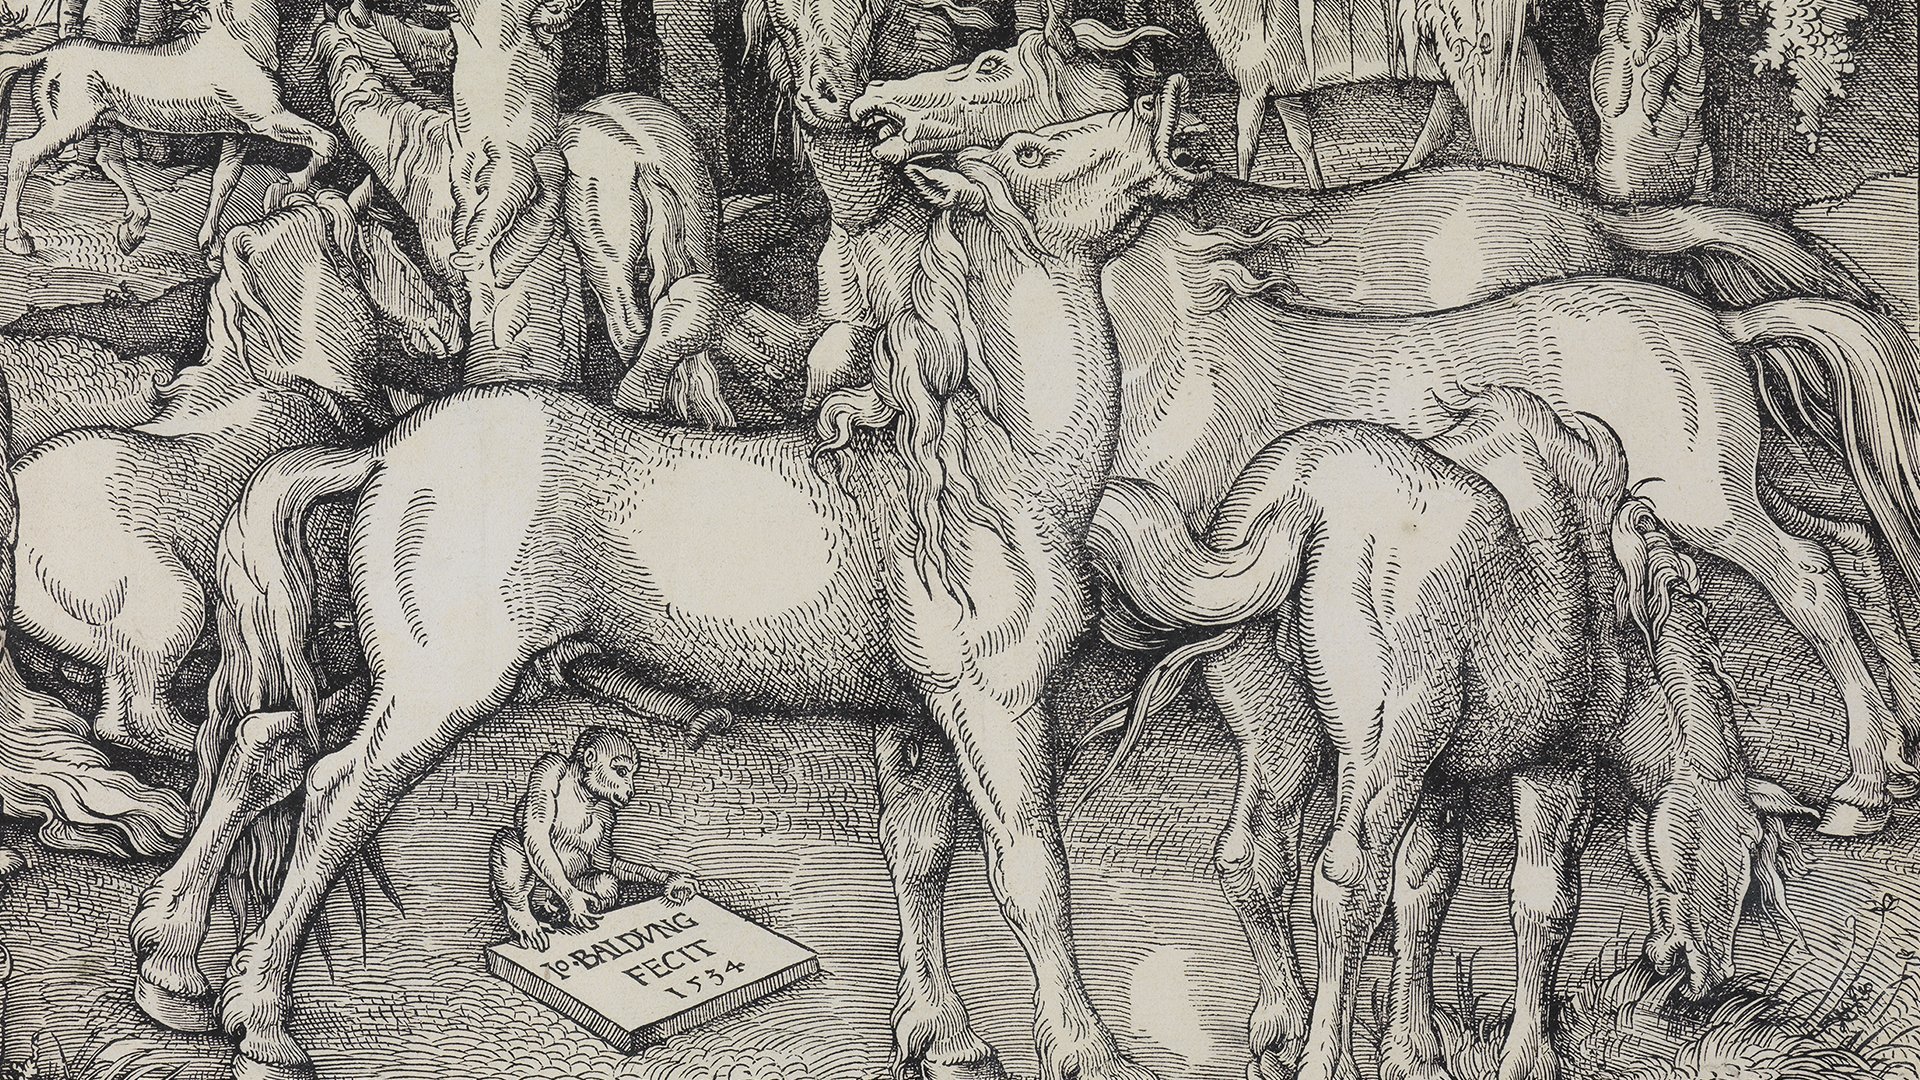 Abbildung von Hans Baldung Griens Holzschnitt, der sieben wilde Pferde zeigt